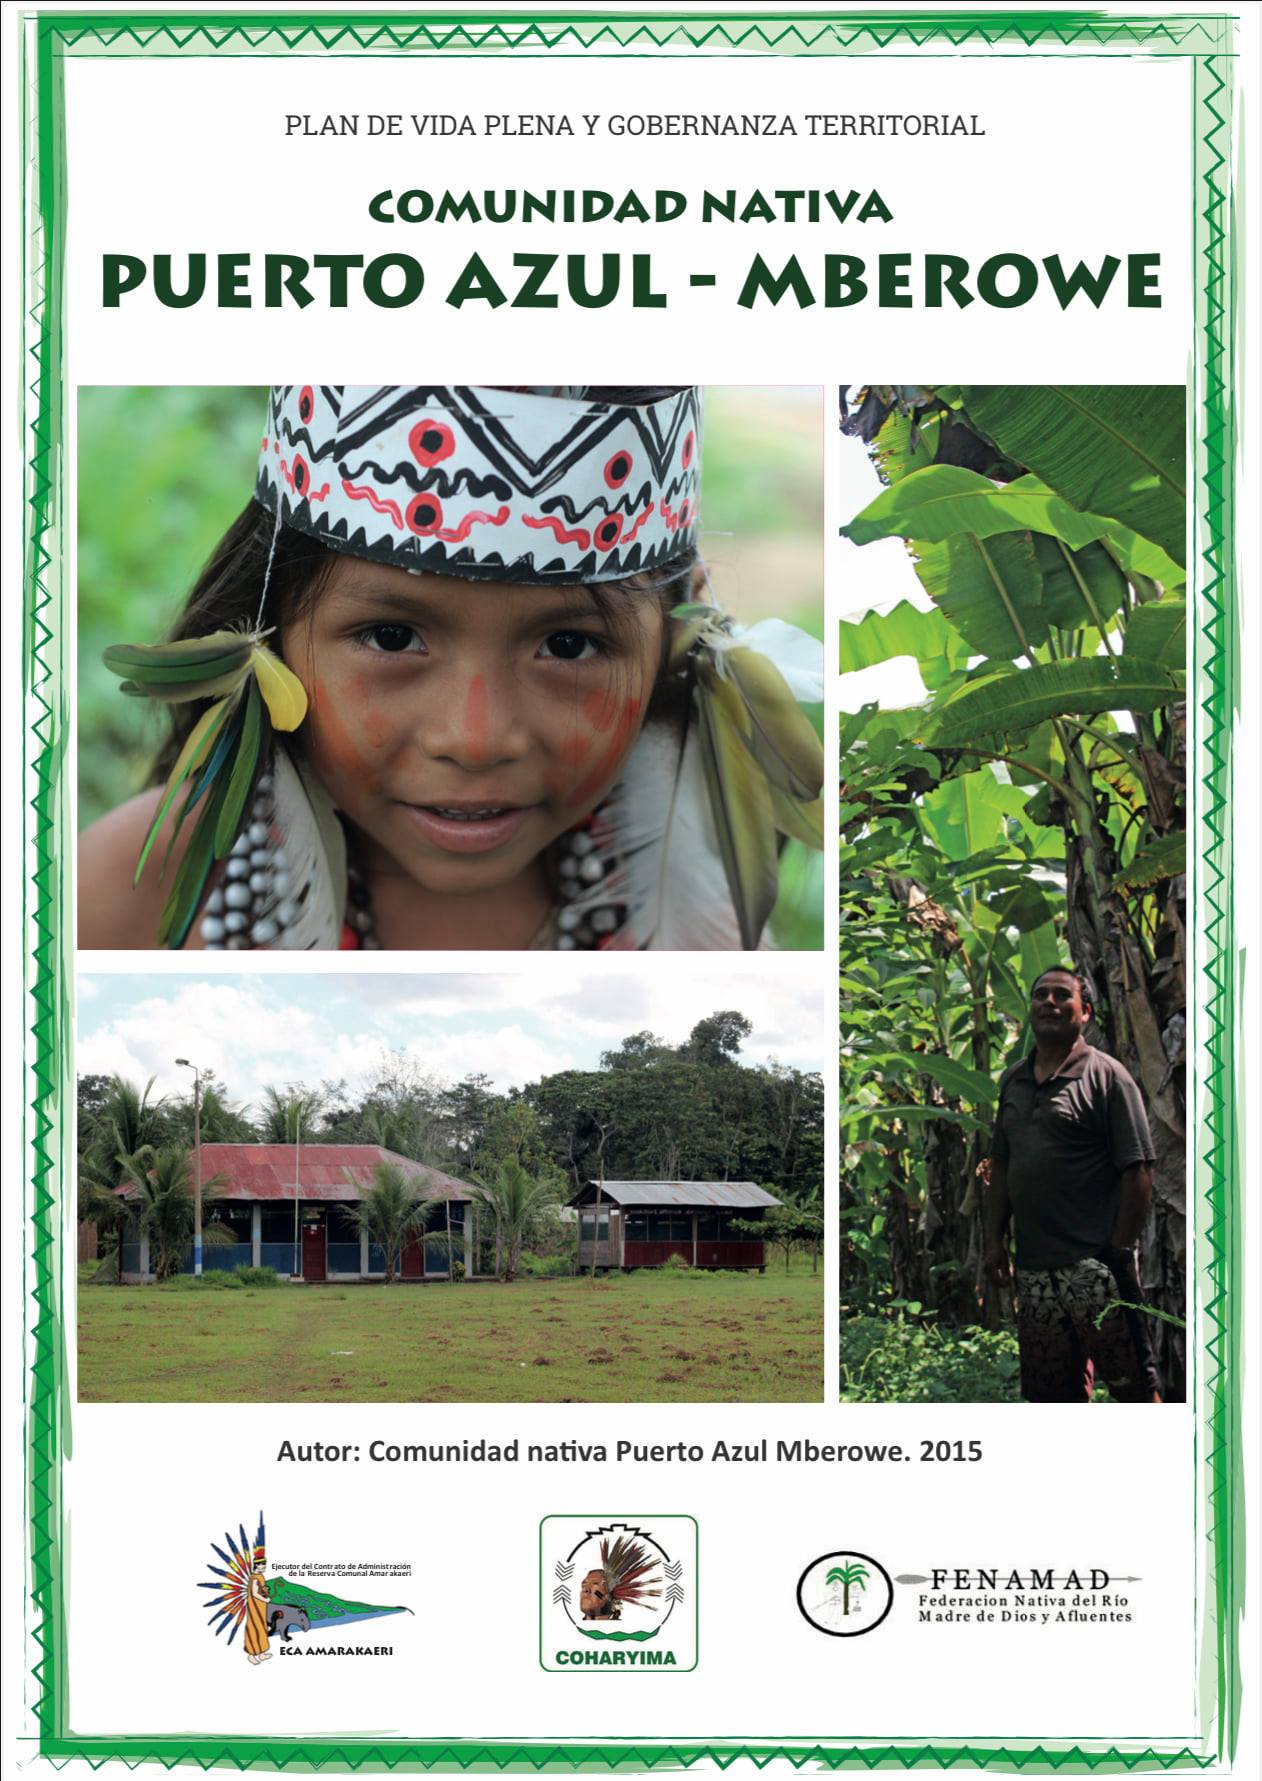 Plan de Vida Plena y Gobernanza Territorial de Comunidad nativa Puerto Azul Mberowe